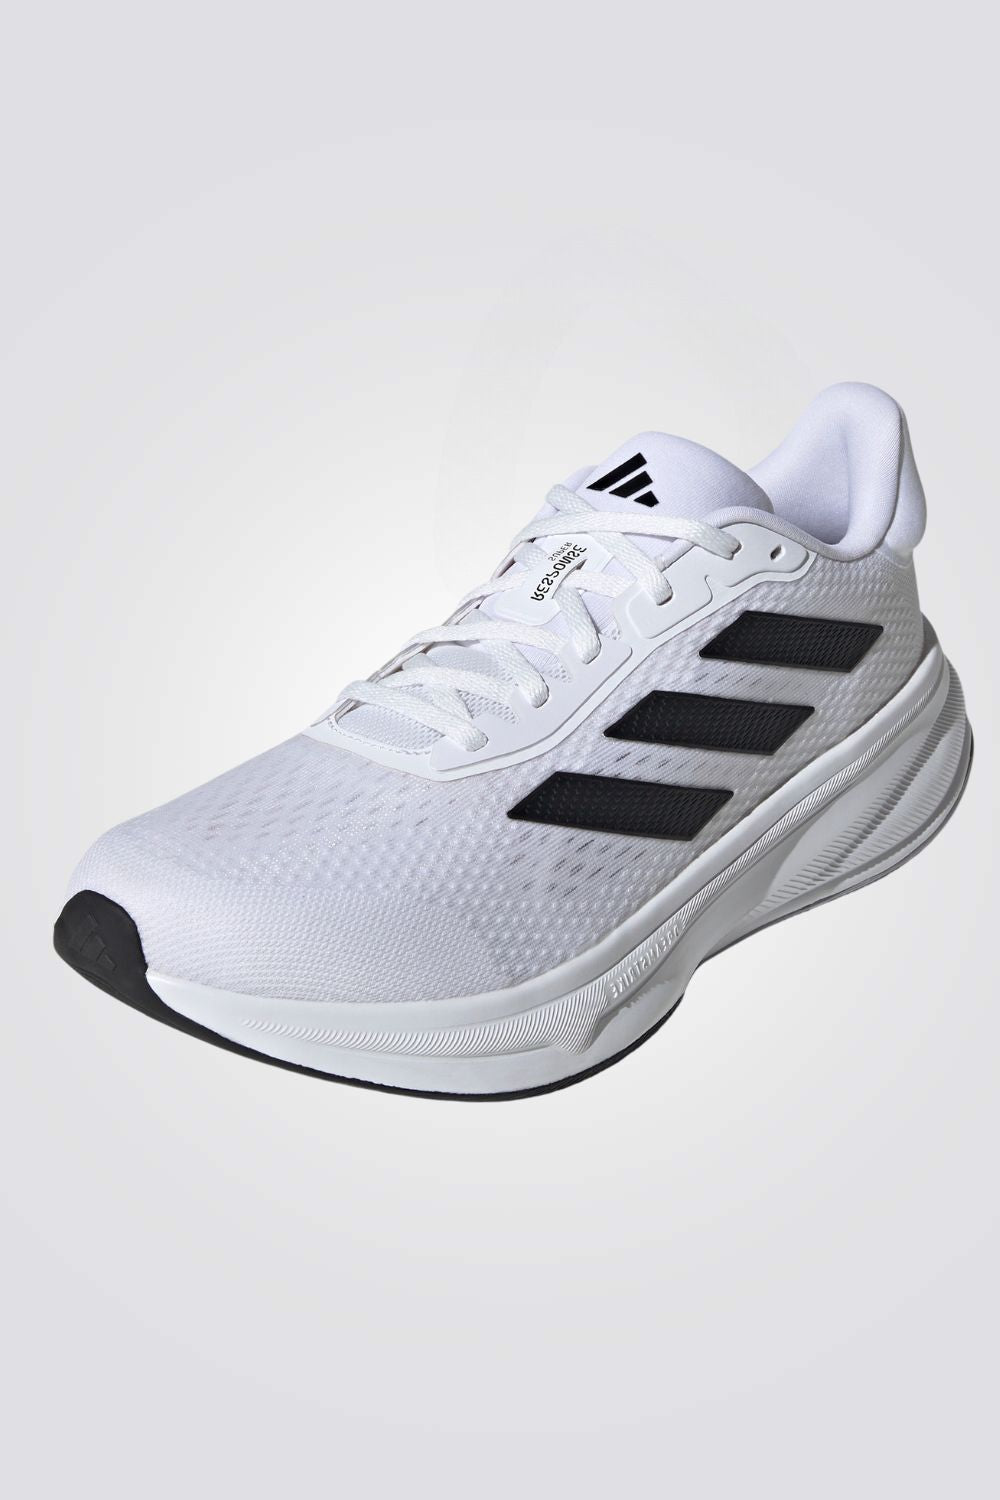 נעלי ספורט לגברים RESPONSE SUPER בצבע לבן ושחור